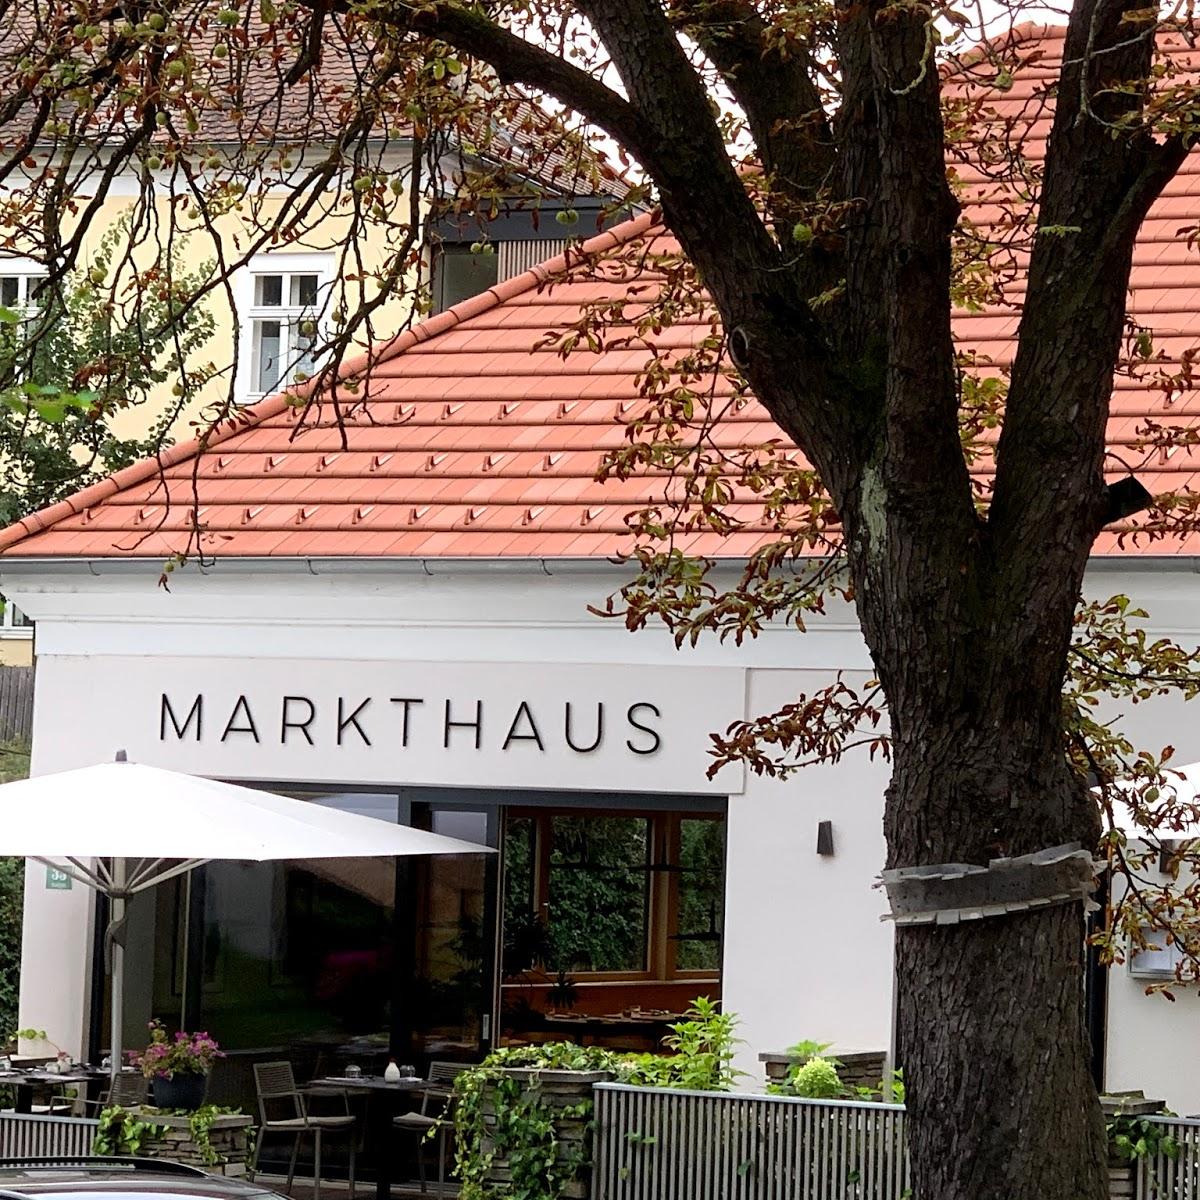 Restaurant "Markthaus" in Grafenwörth